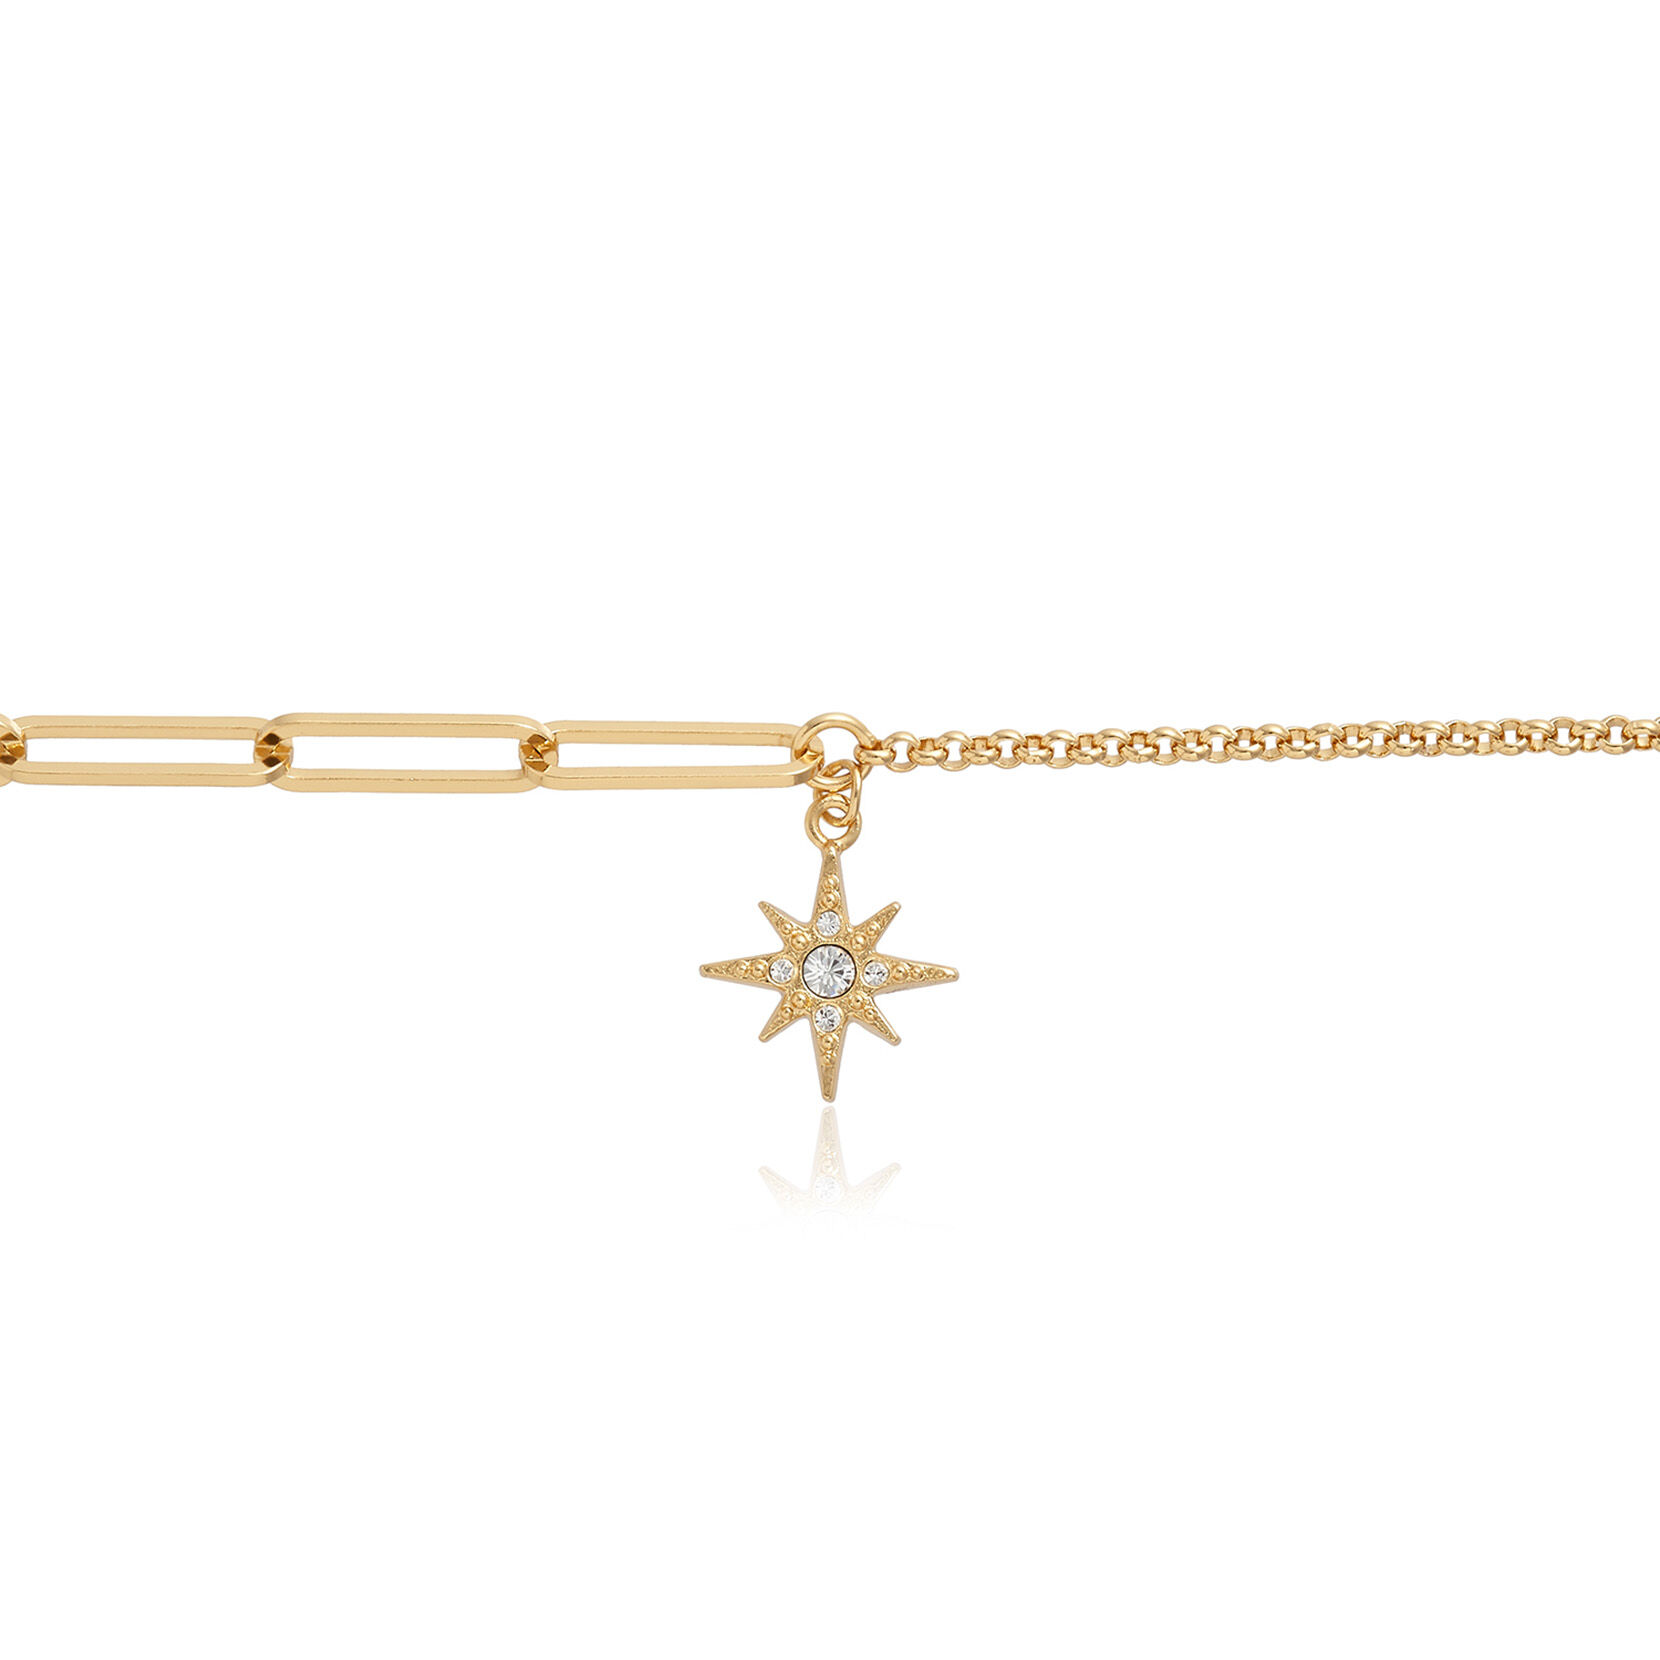 Celestial North Star Mismatch Bracelet Gold